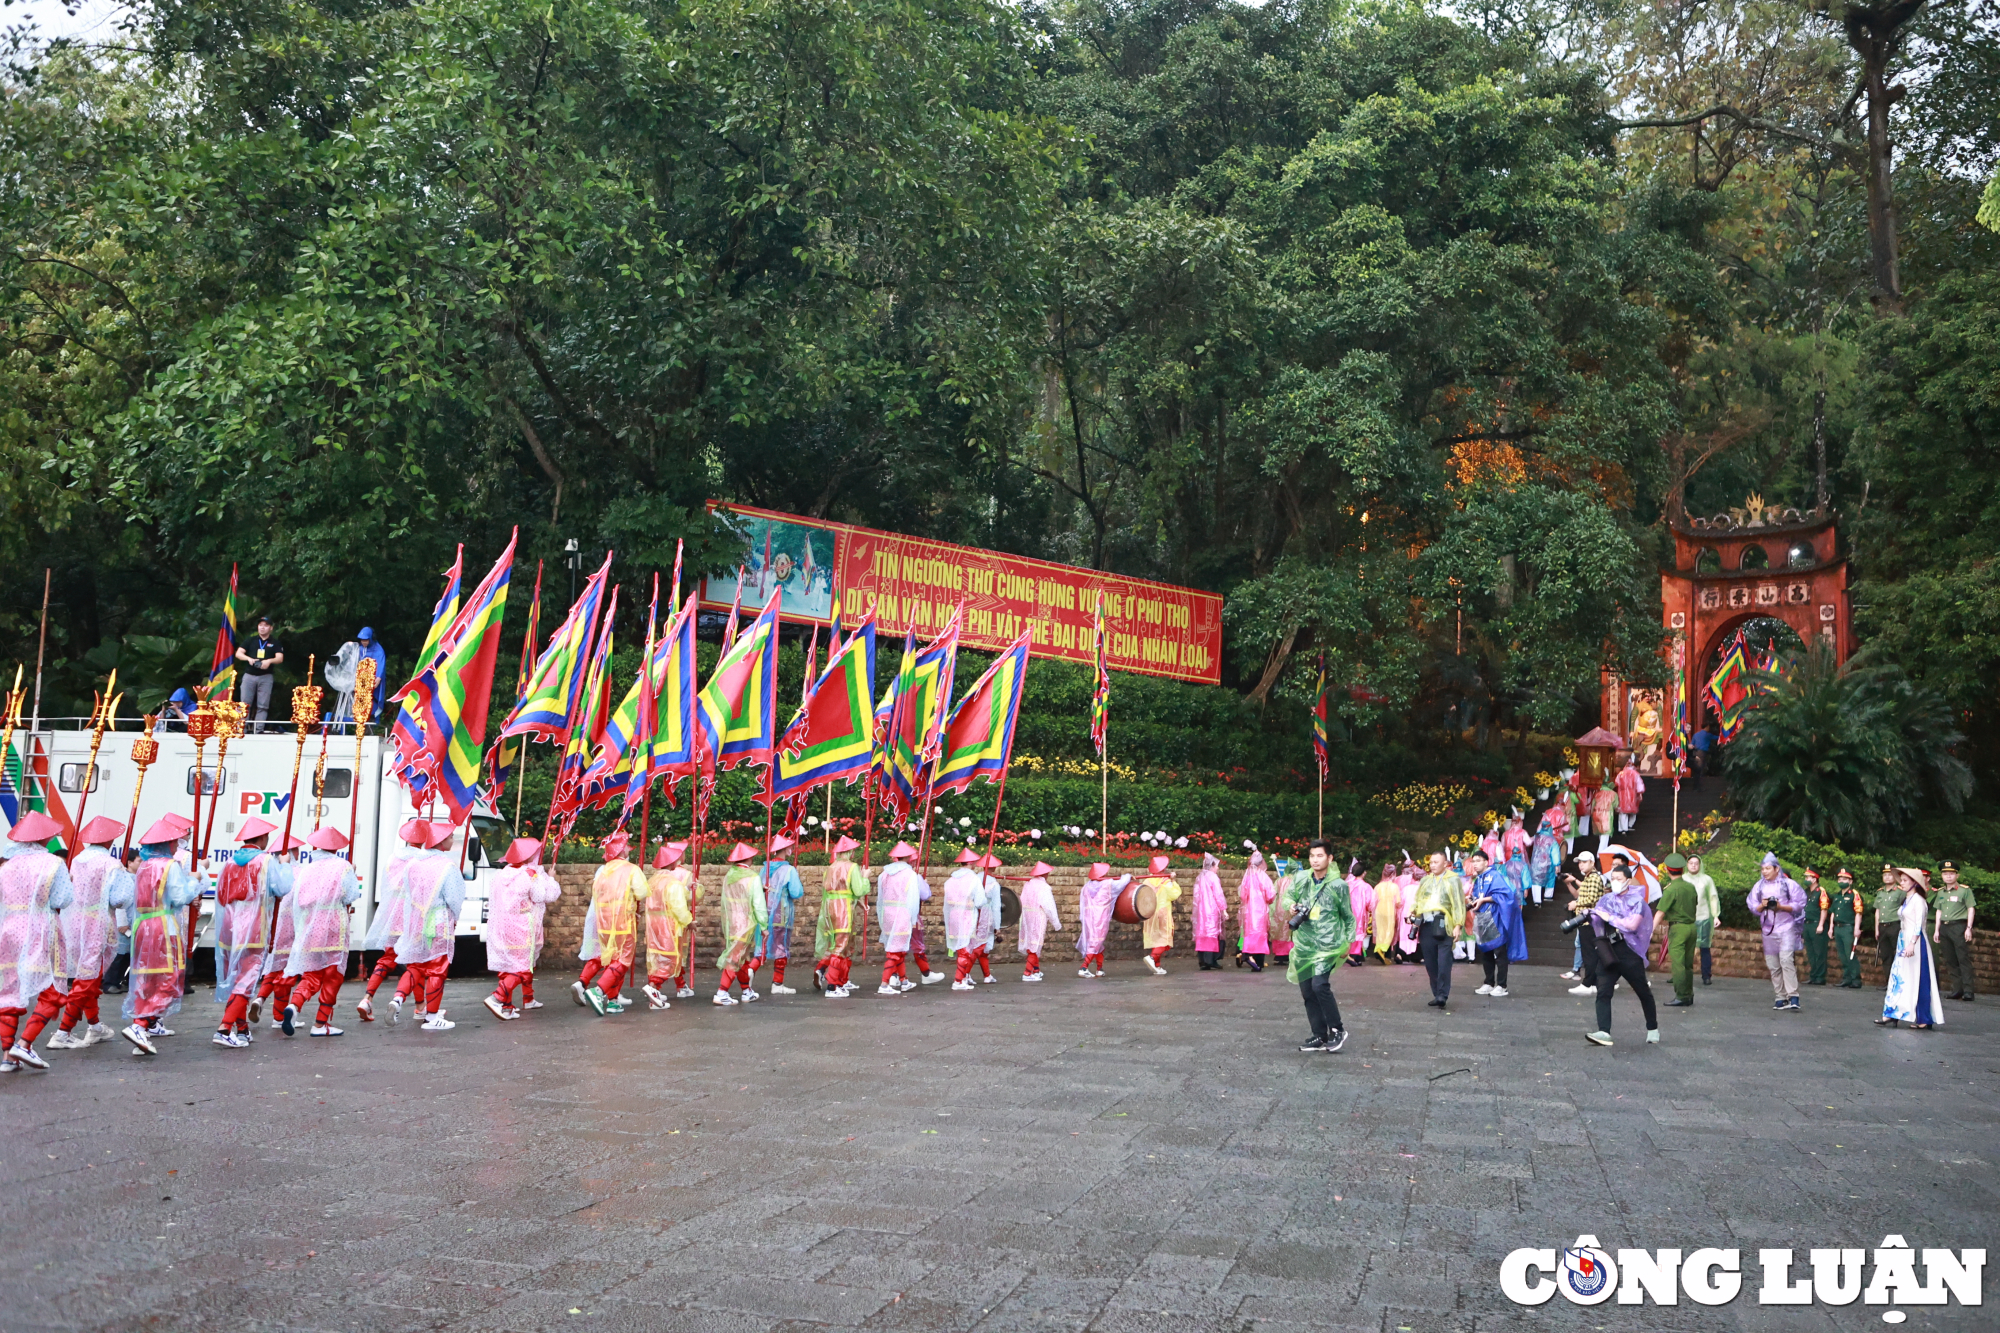 Đoàn cầm cờ tiến lên khu vực đền Thượng để dâng hương tưởng nhớ các vị Vua Hùng đã có công dựng nước.